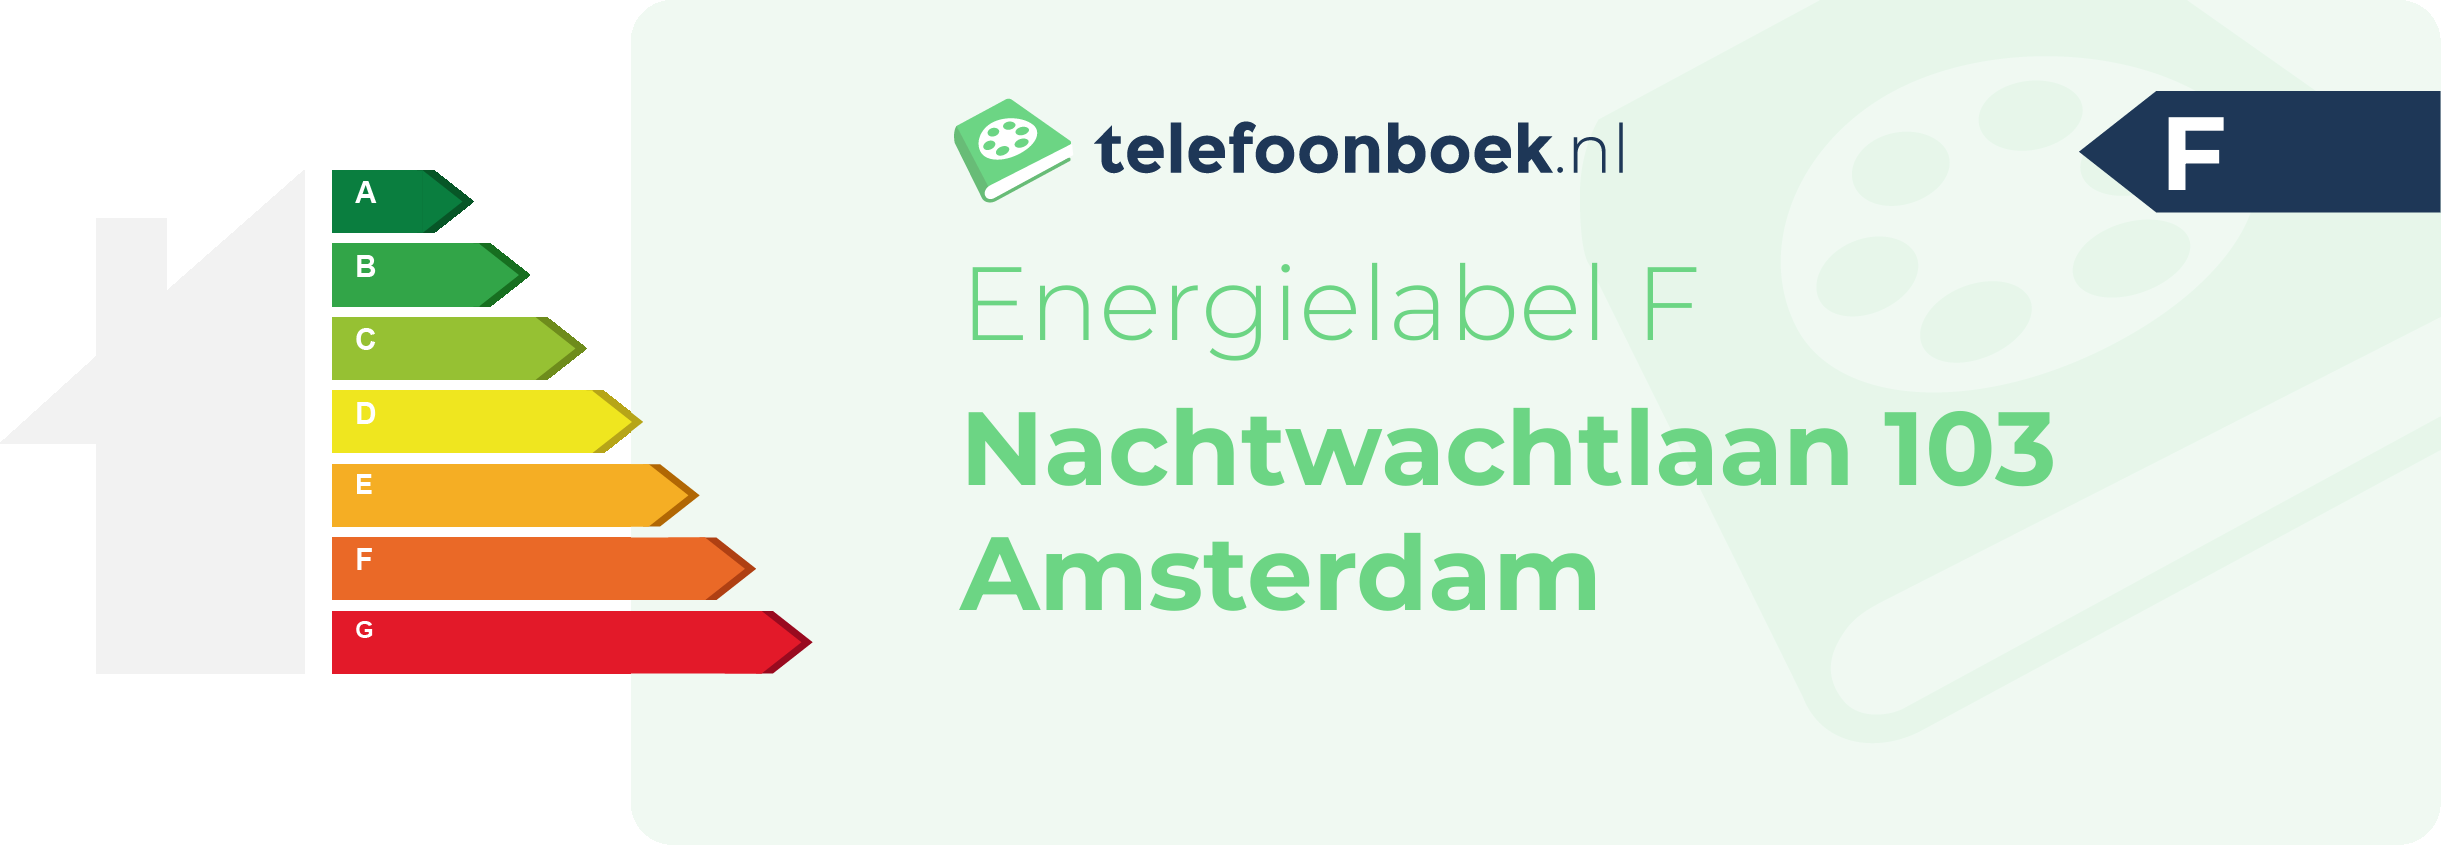 Energielabel Nachtwachtlaan 103 Amsterdam